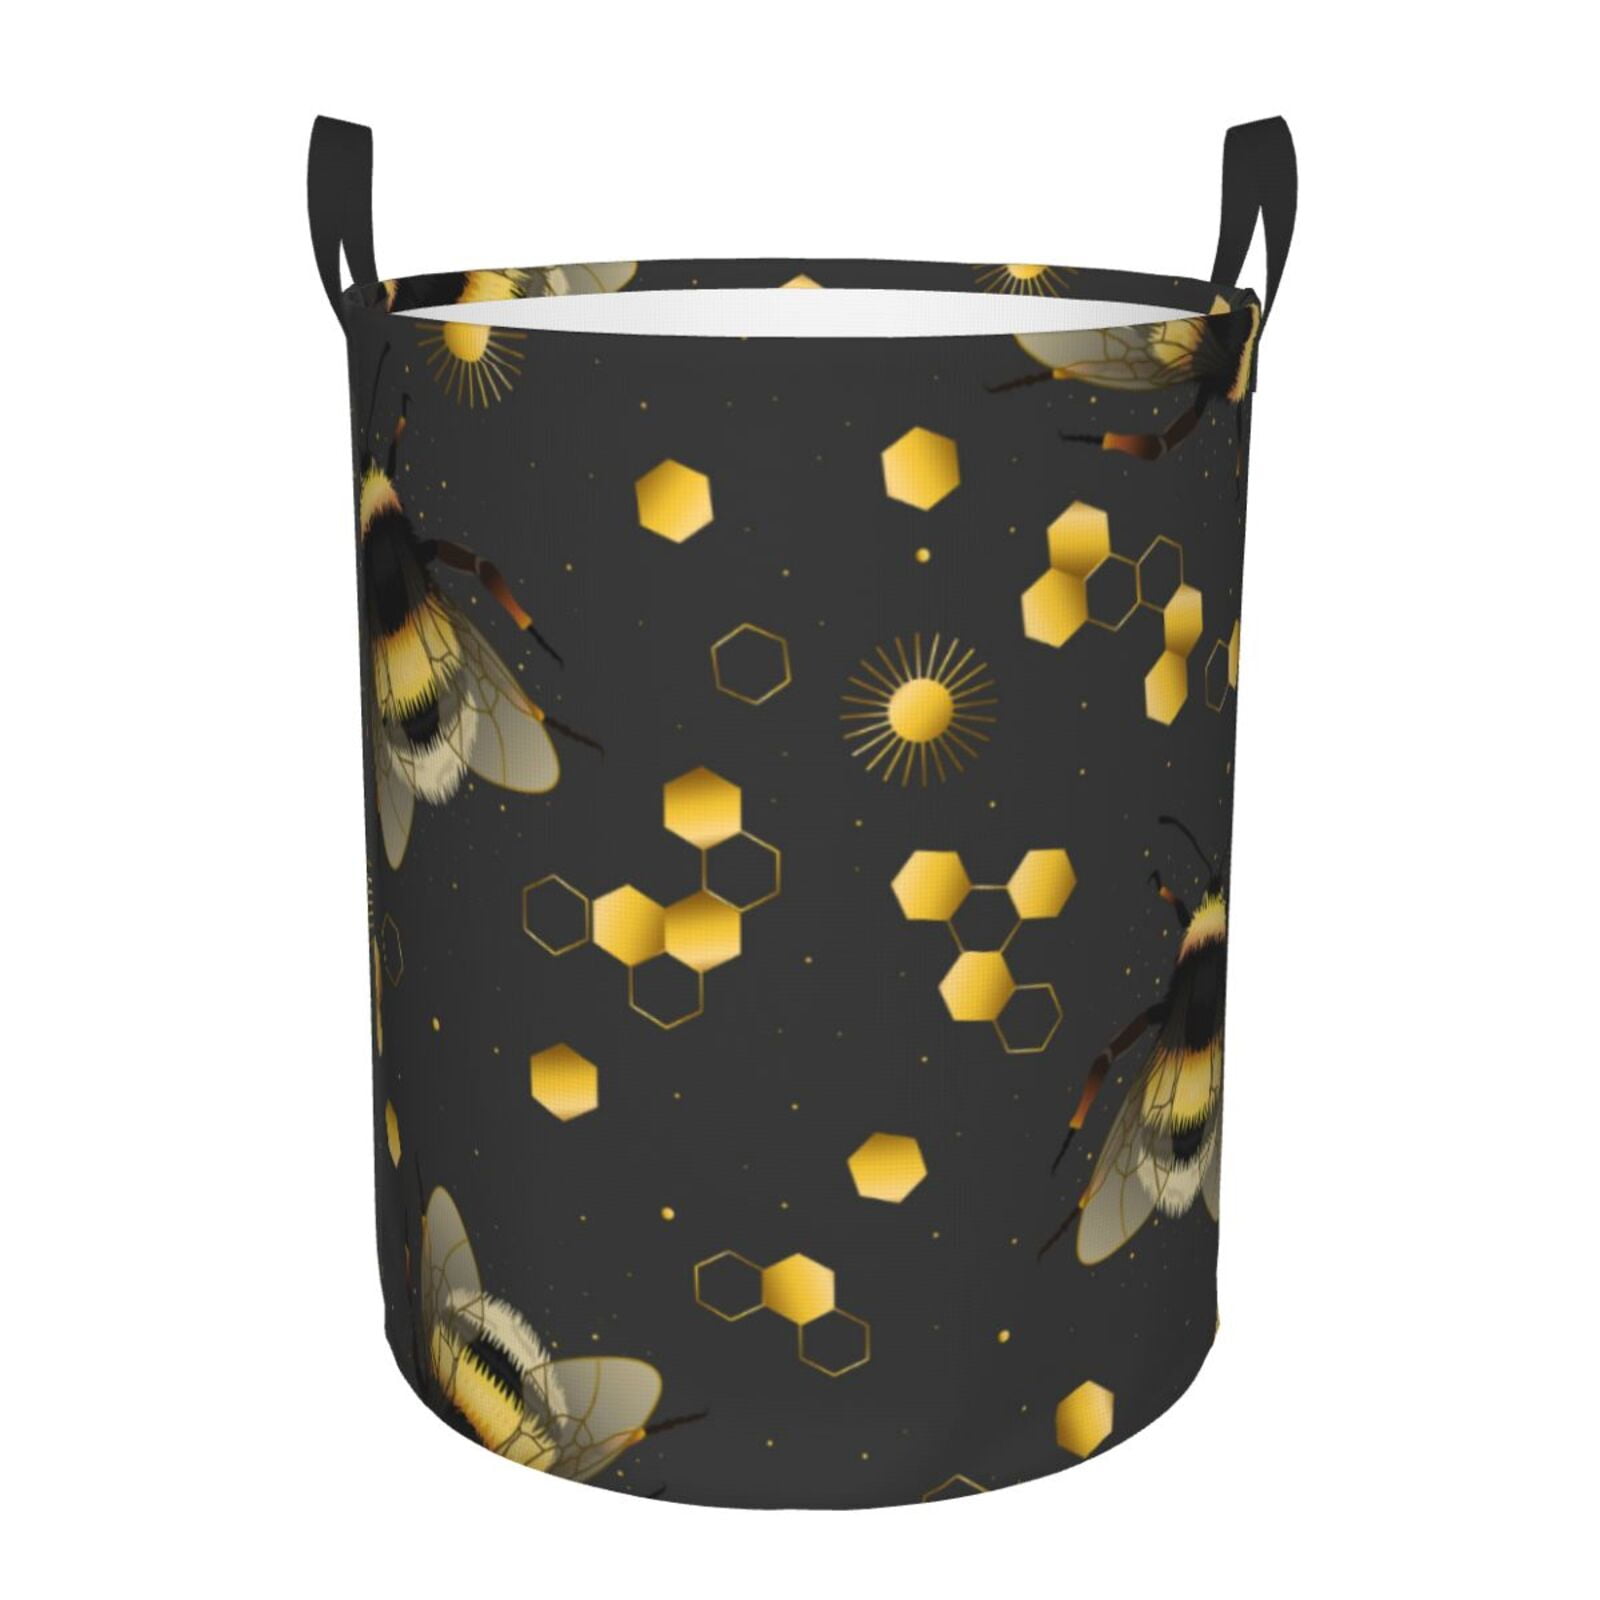 Coaee Bumblebee Laundry Basket with Handle, Waterproof Round ...